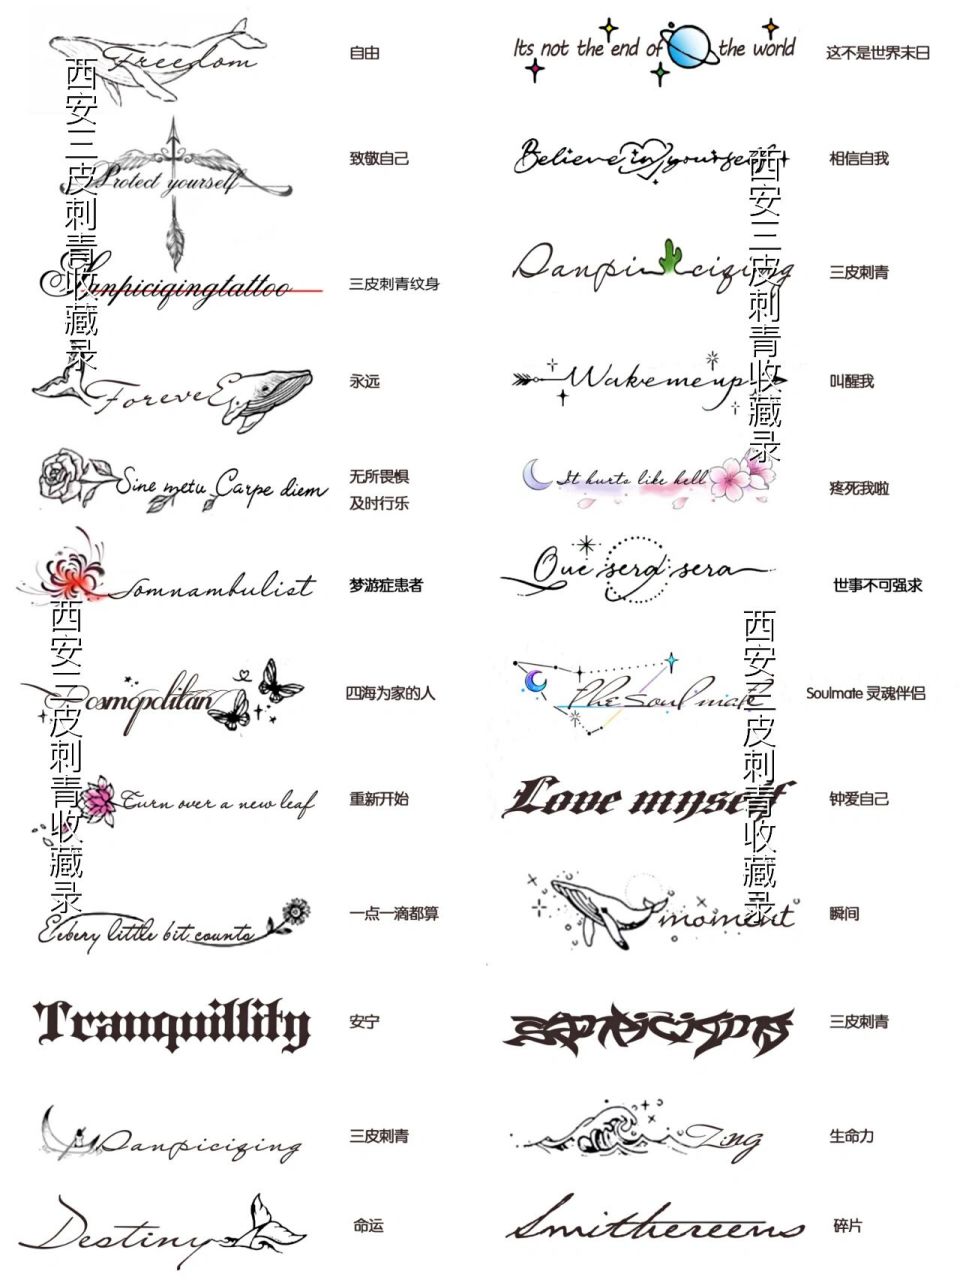 英文字母纹身锁骨纹身手稿图案手稿 英文字母纹身手稿图案